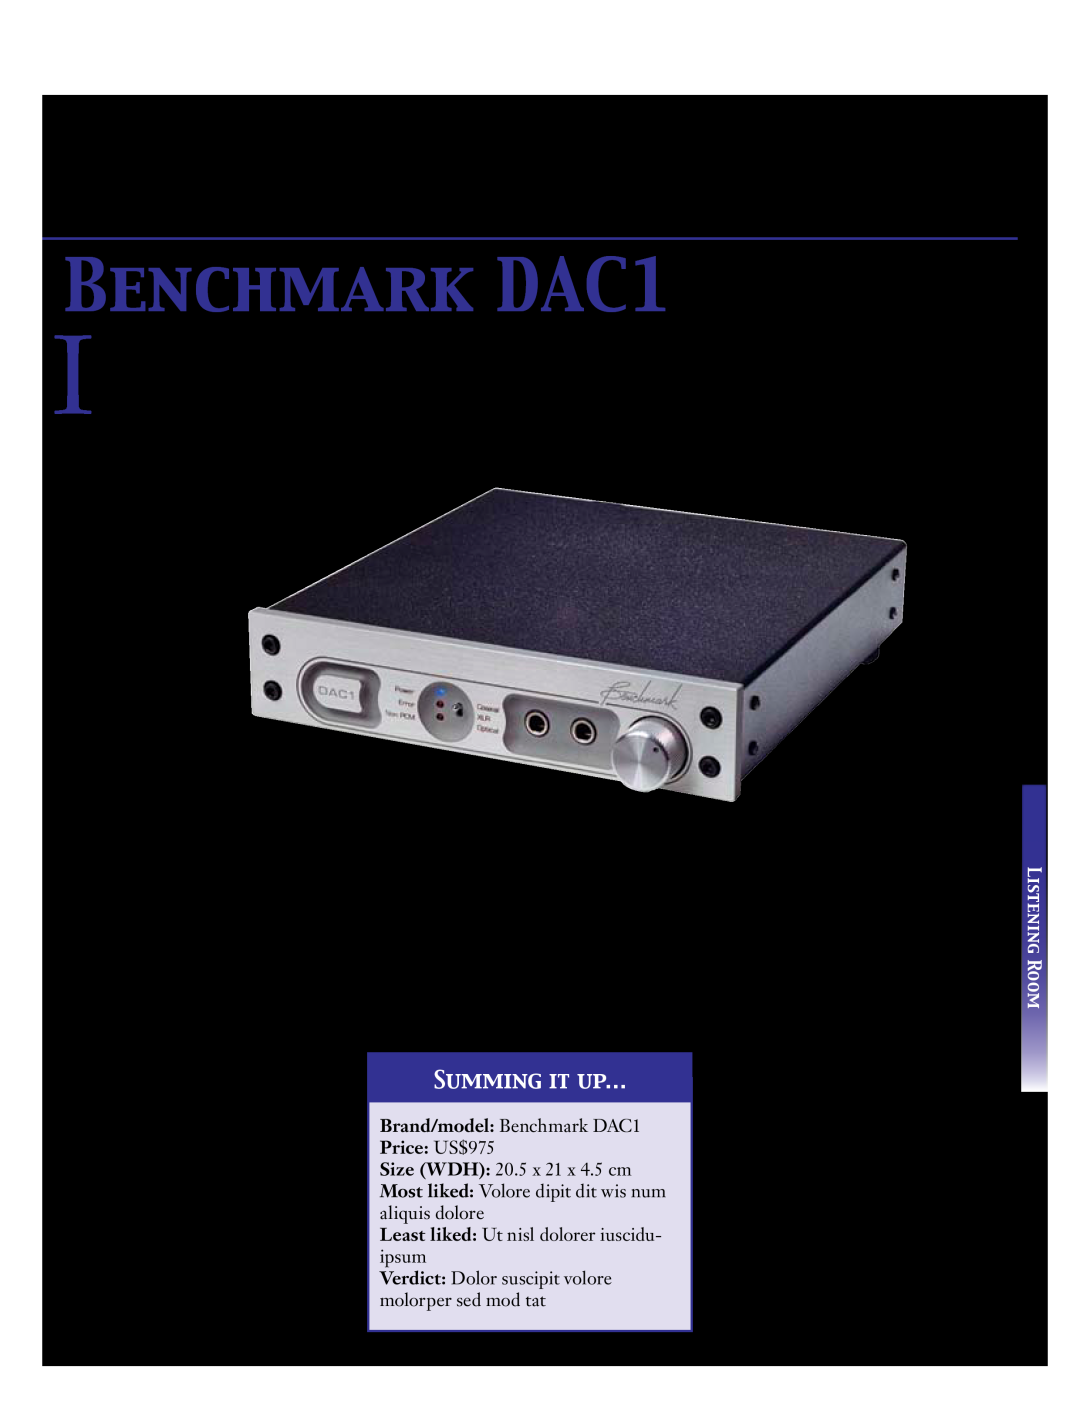 Koss 76 manual BENCHMARK DAC1, Summing It Up…, Price US$975 